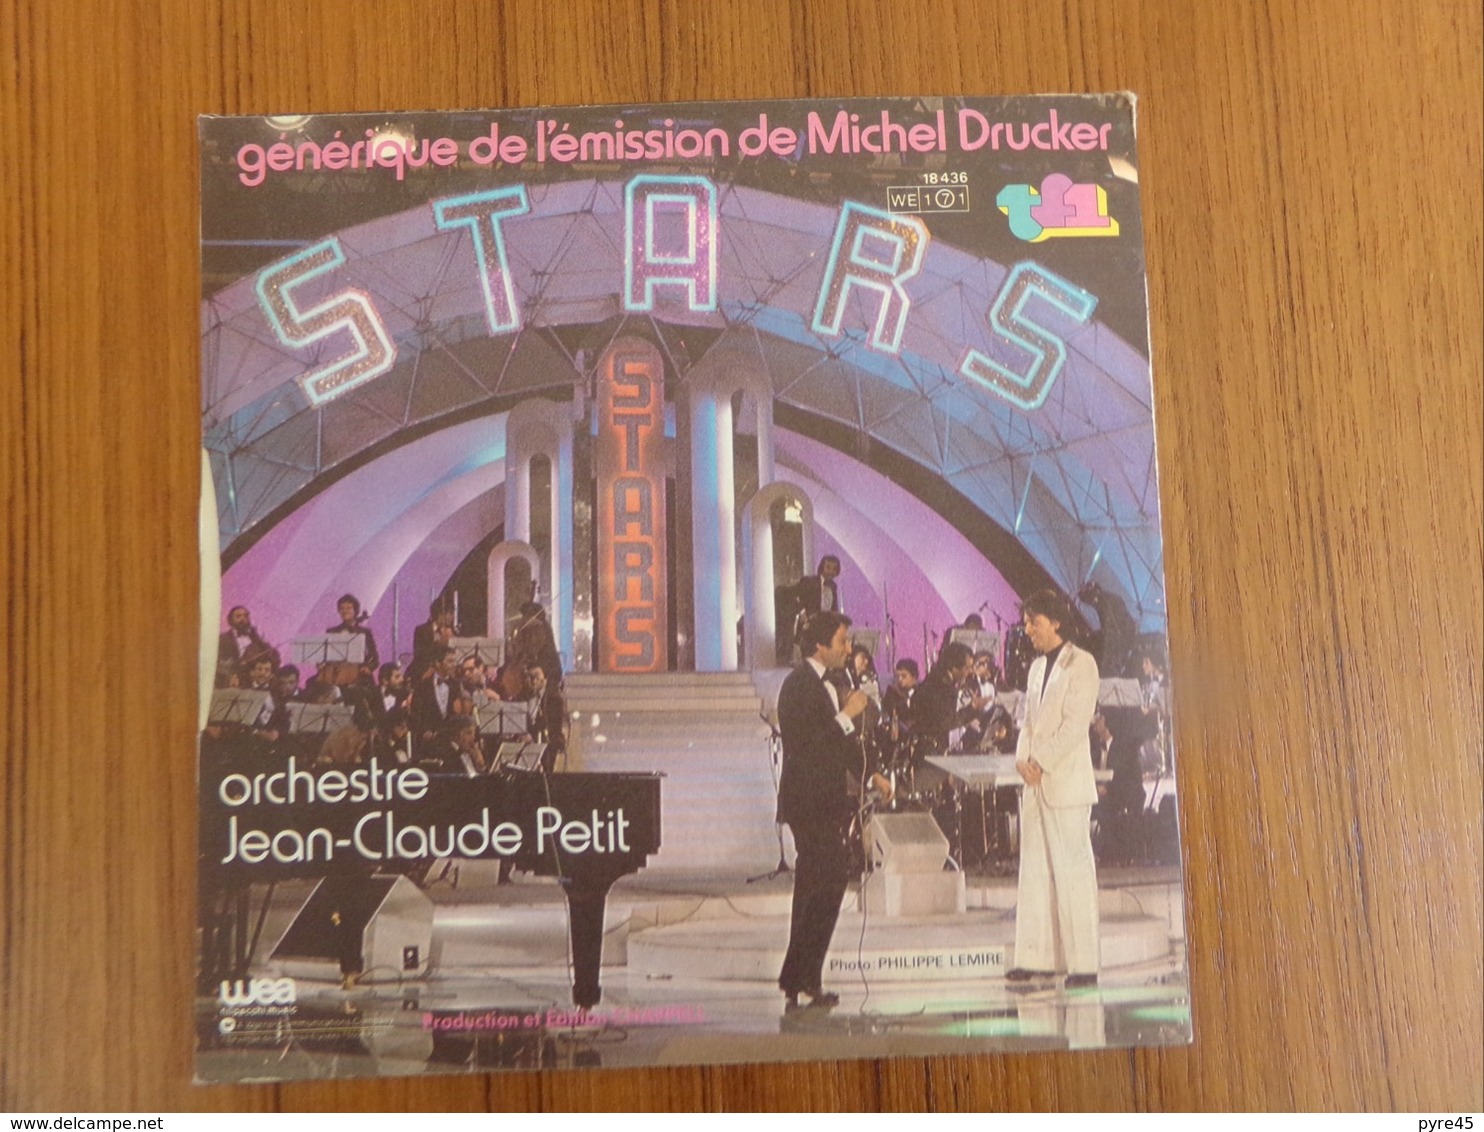 45 TOURS JEAN CLAUDE PETIT WEA 18436 GENERIQUE DE L EMISSION DE MICHEL DRUCKER STARS - Musica Di Film